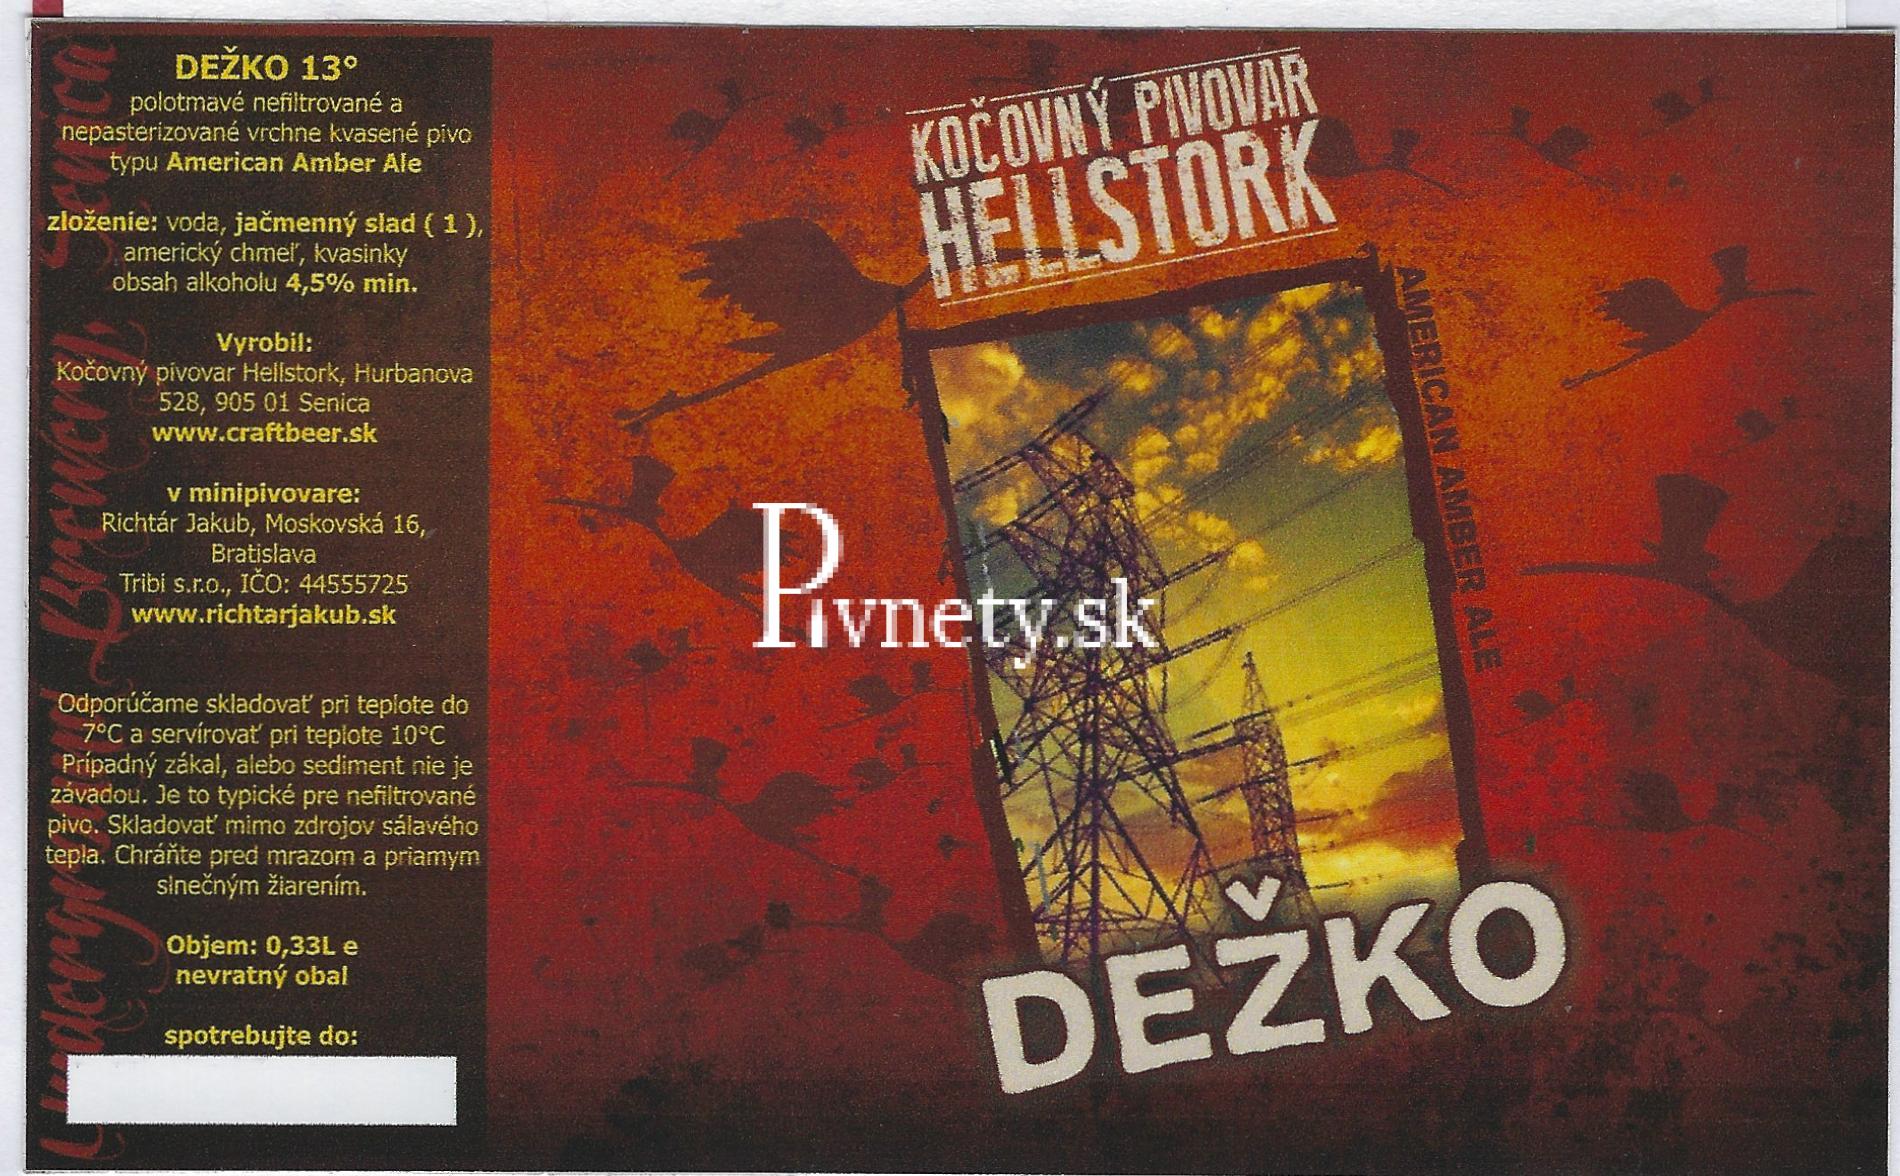 Kočovný pivovar Hellstork - Dežko 13°